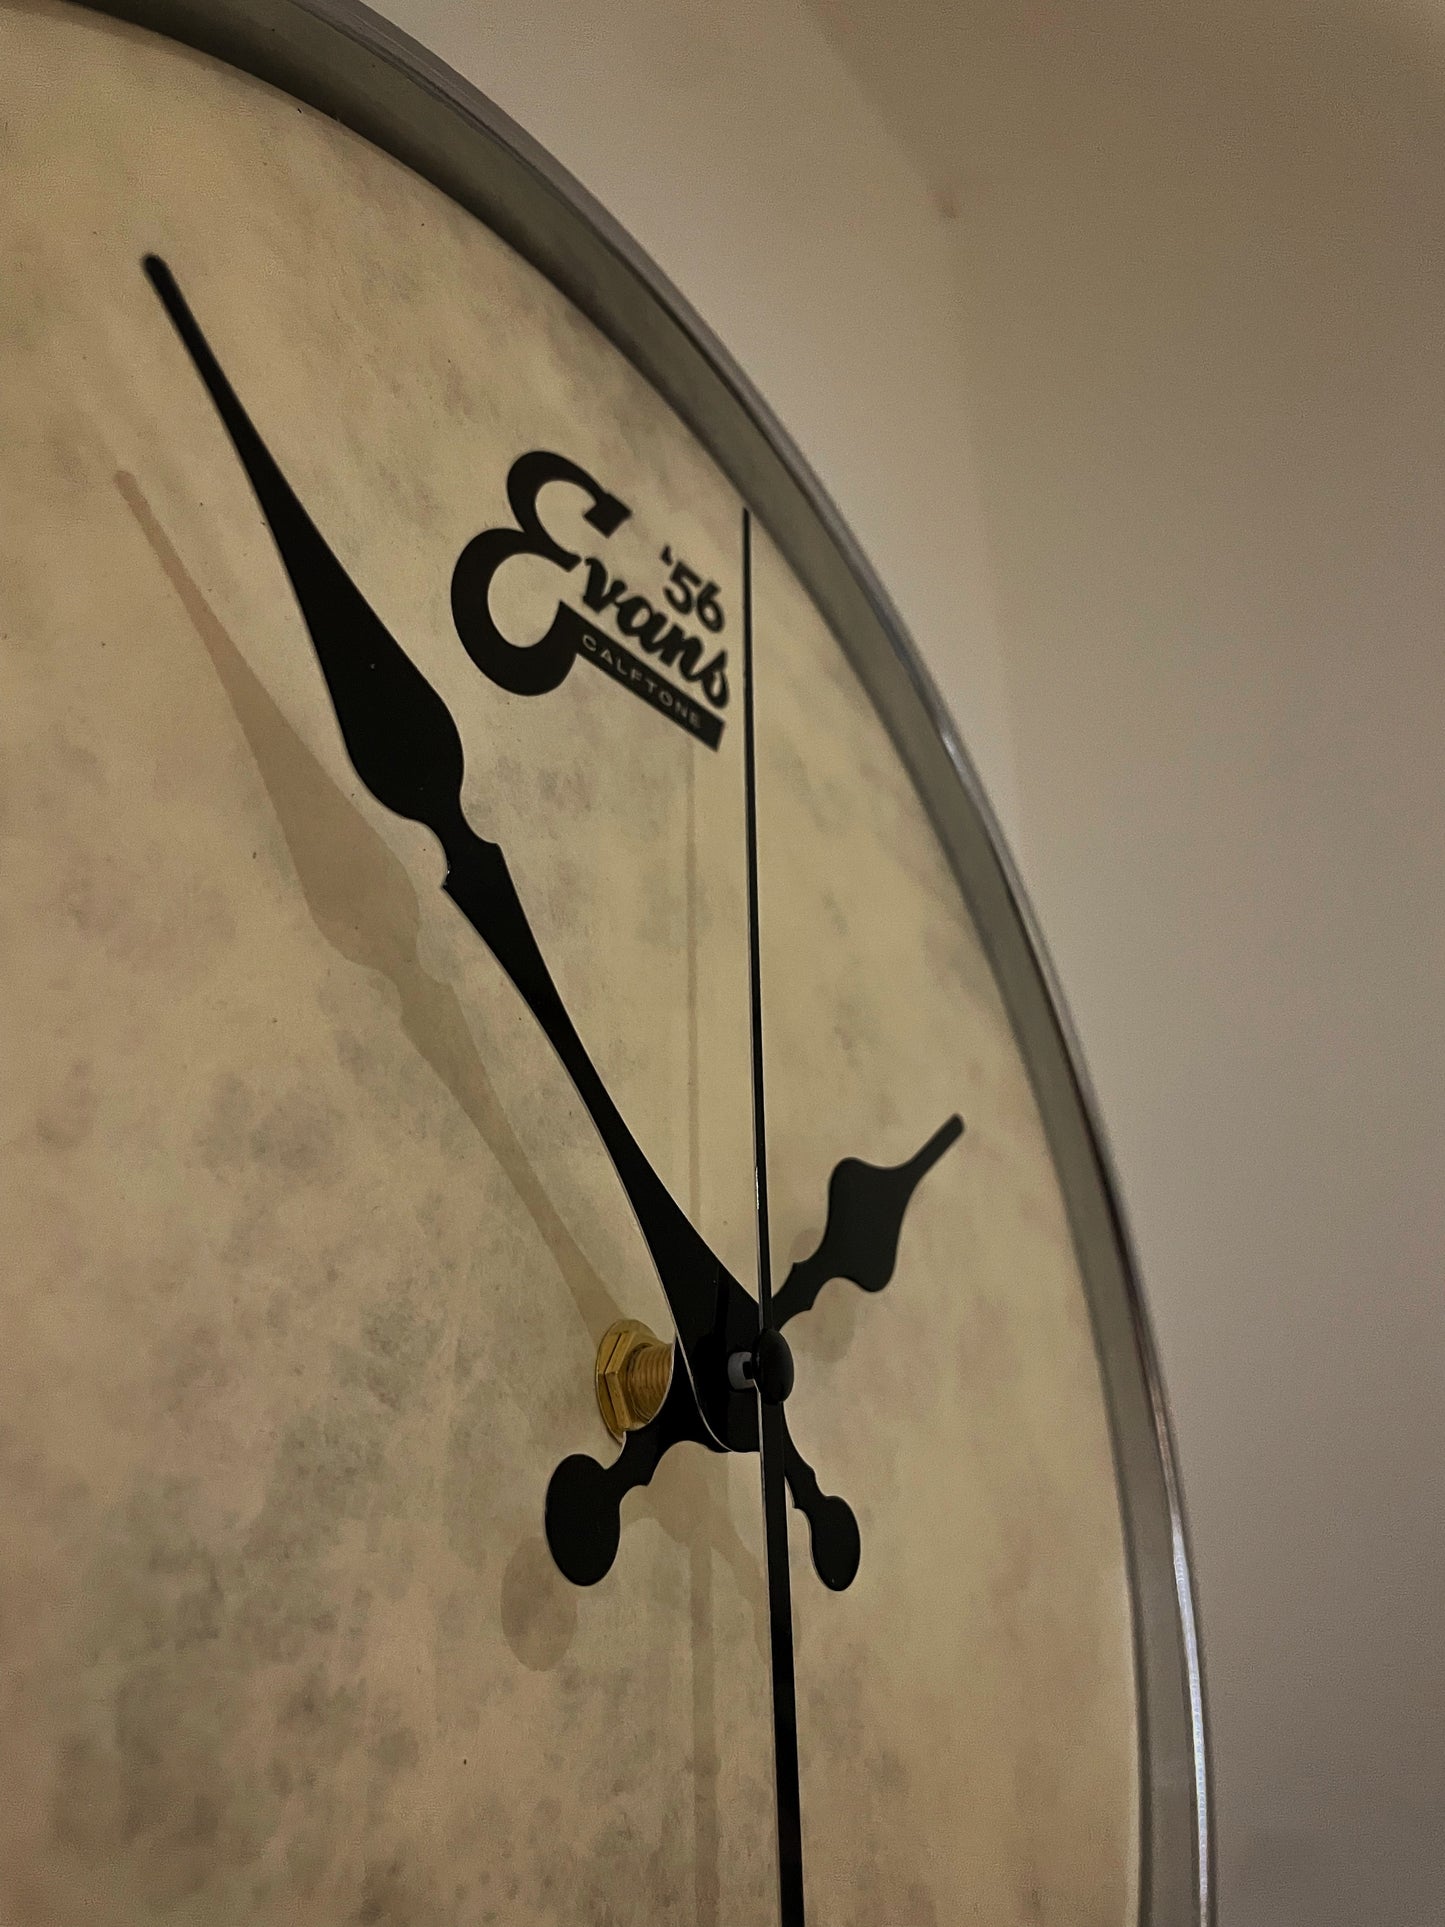 EVANS Drum Clock / Wall Mounted 12” Drum Clock / Rustic Brown / Upcycled Drum